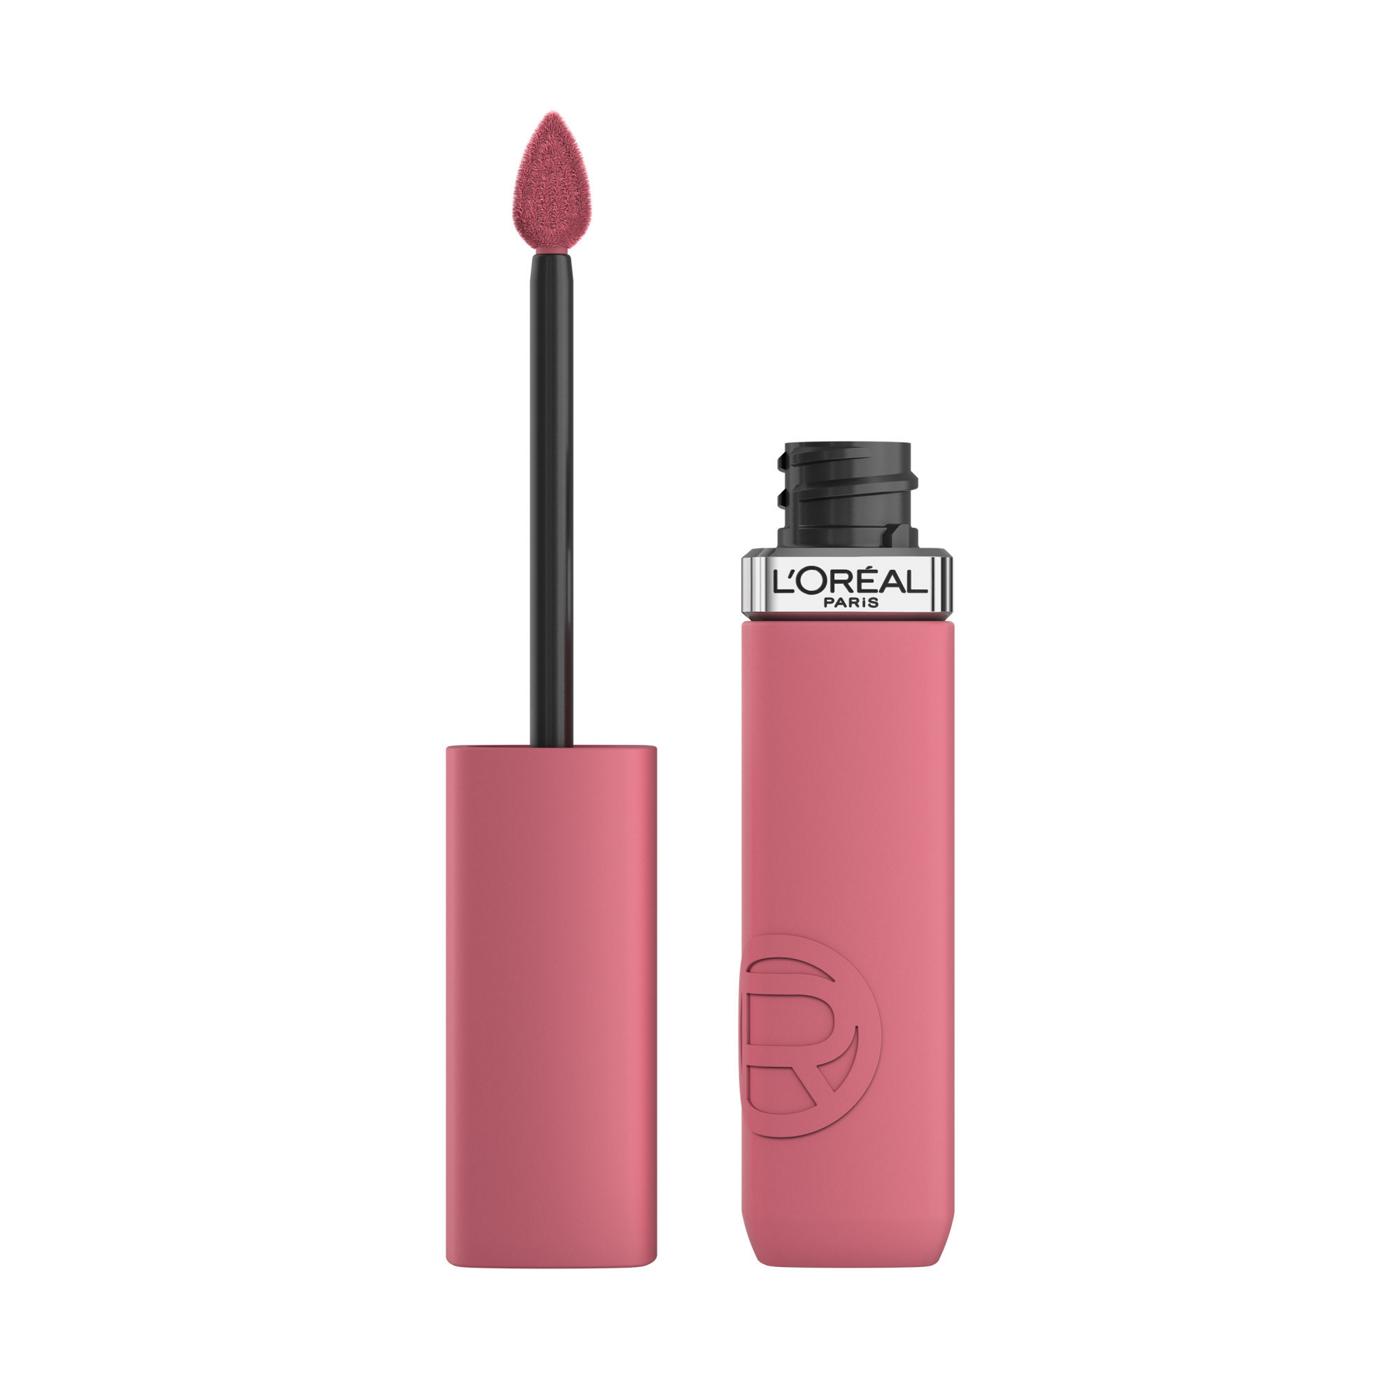 L'Oréal Paris Infallible Le Matte Resistance Liquid Lipstick - Road Tripping; image 1 of 6